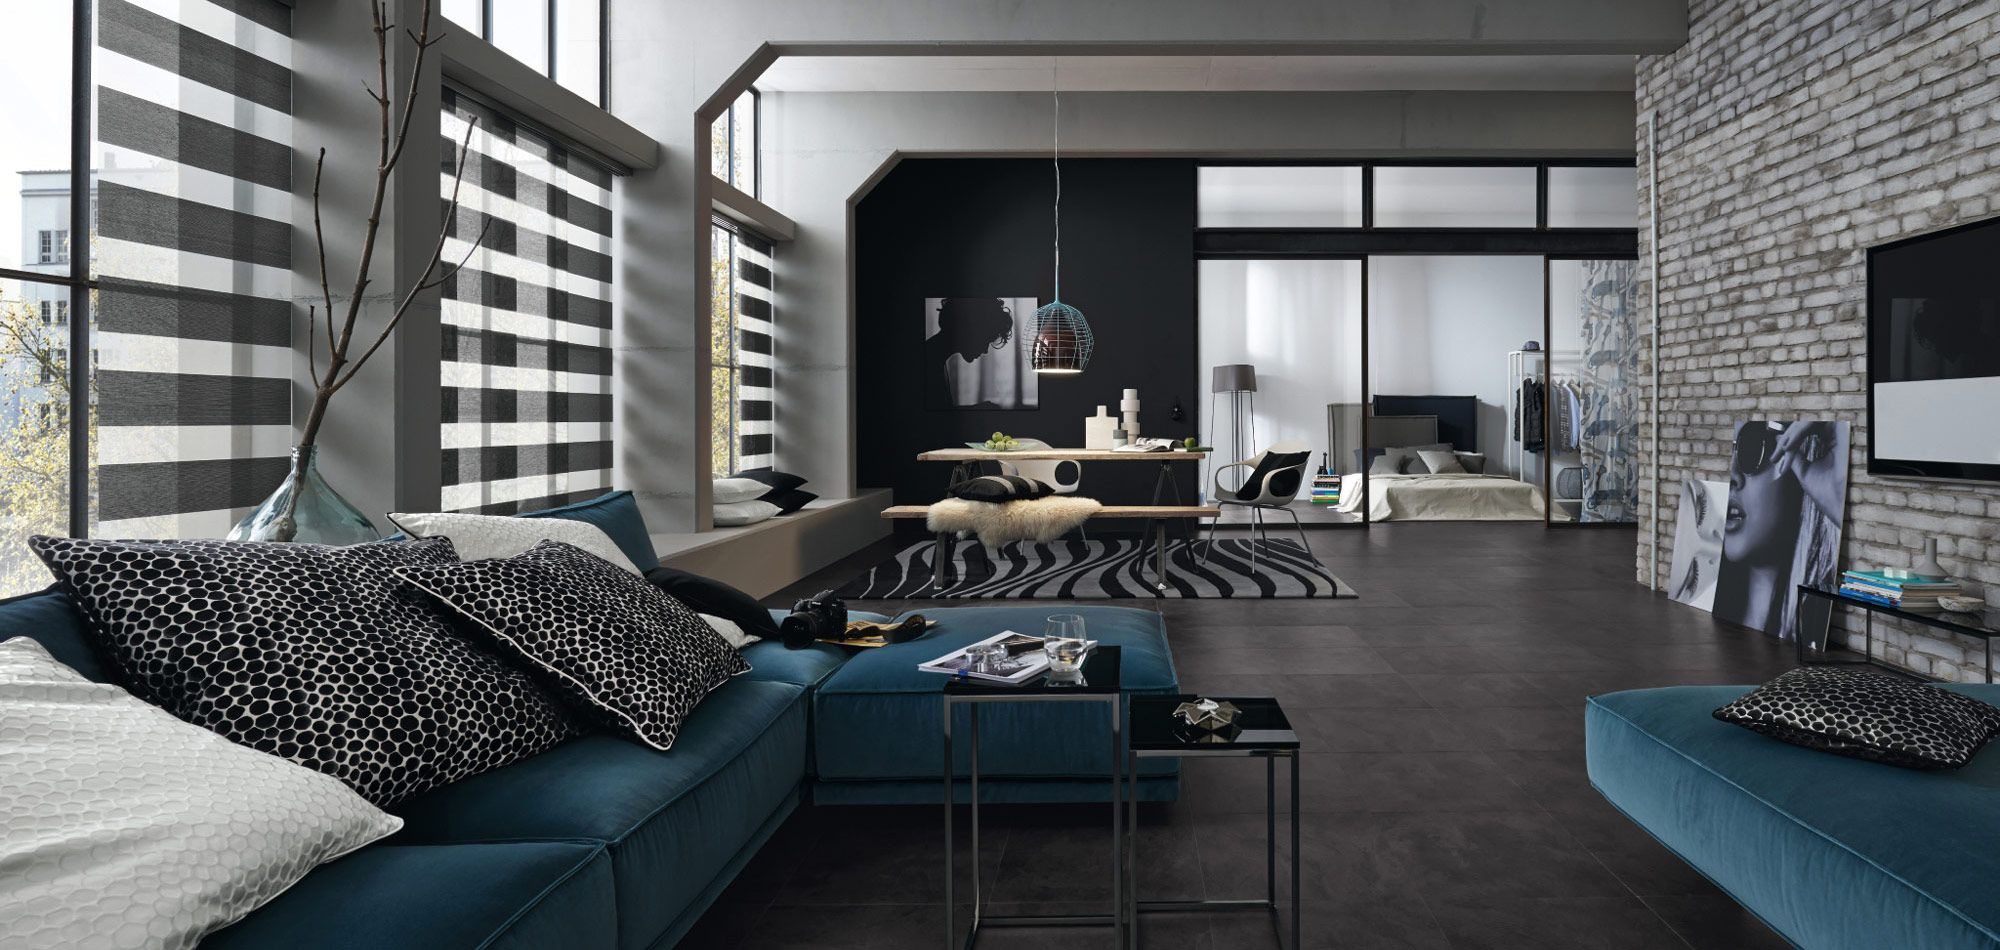 Wohnraum mit Designer Möbeln und maßgefertigten Rollos